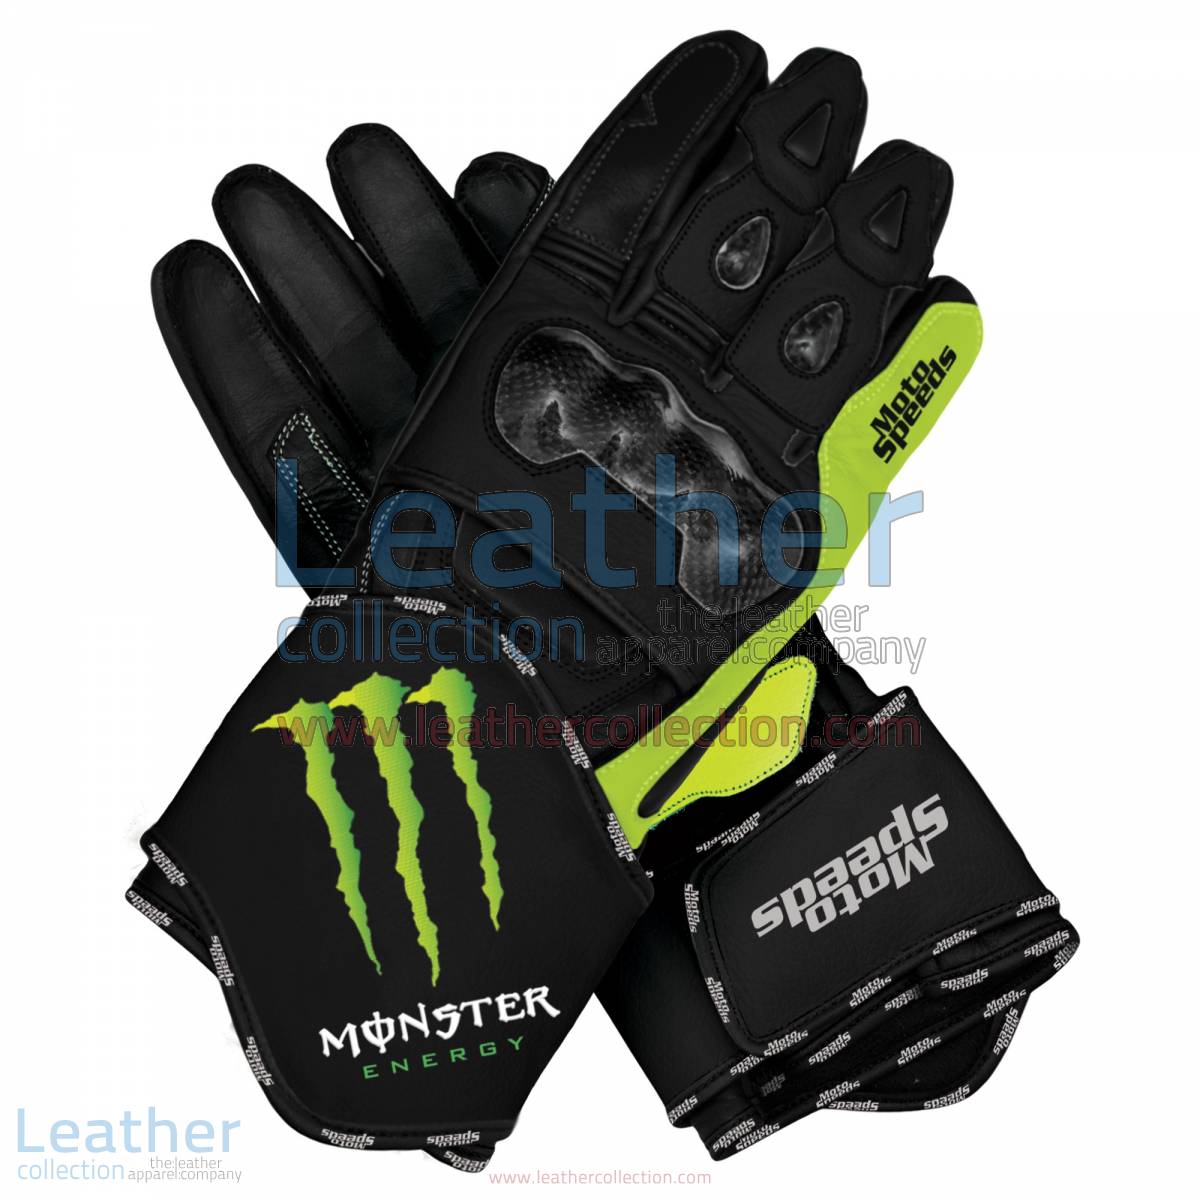 Monster Motorbike Leather Race Gloves | Monster motorcycle leather race gloves